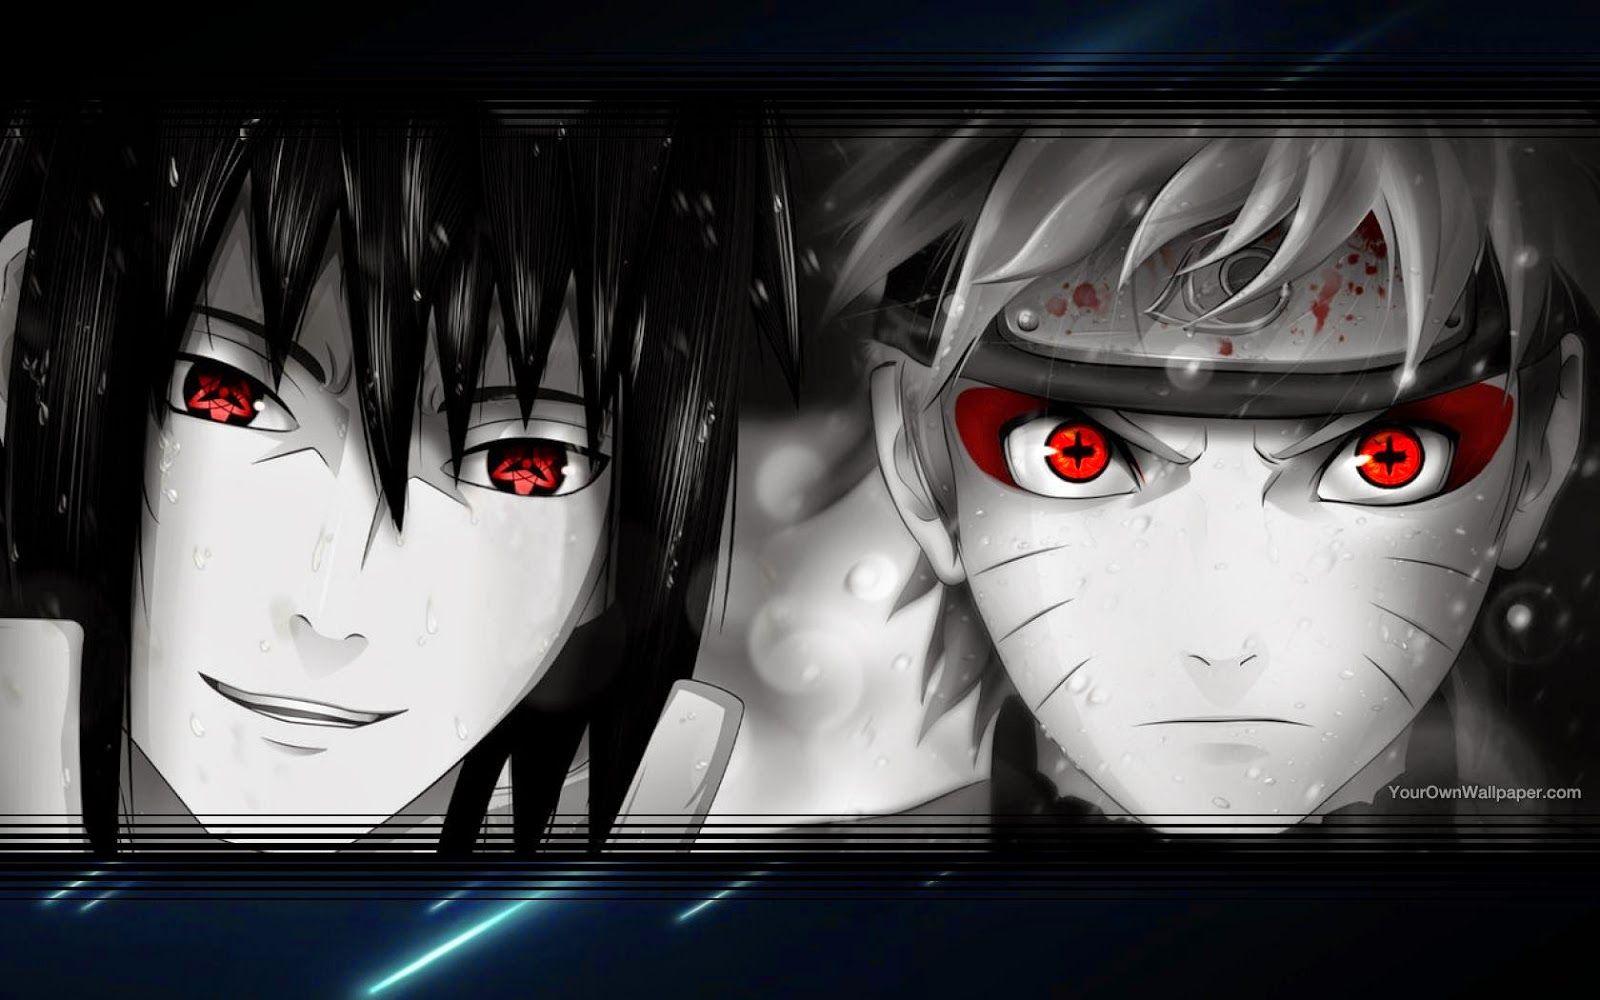 WallpaperKu: Naruto vs Sasuke Wallpaper. Otaku